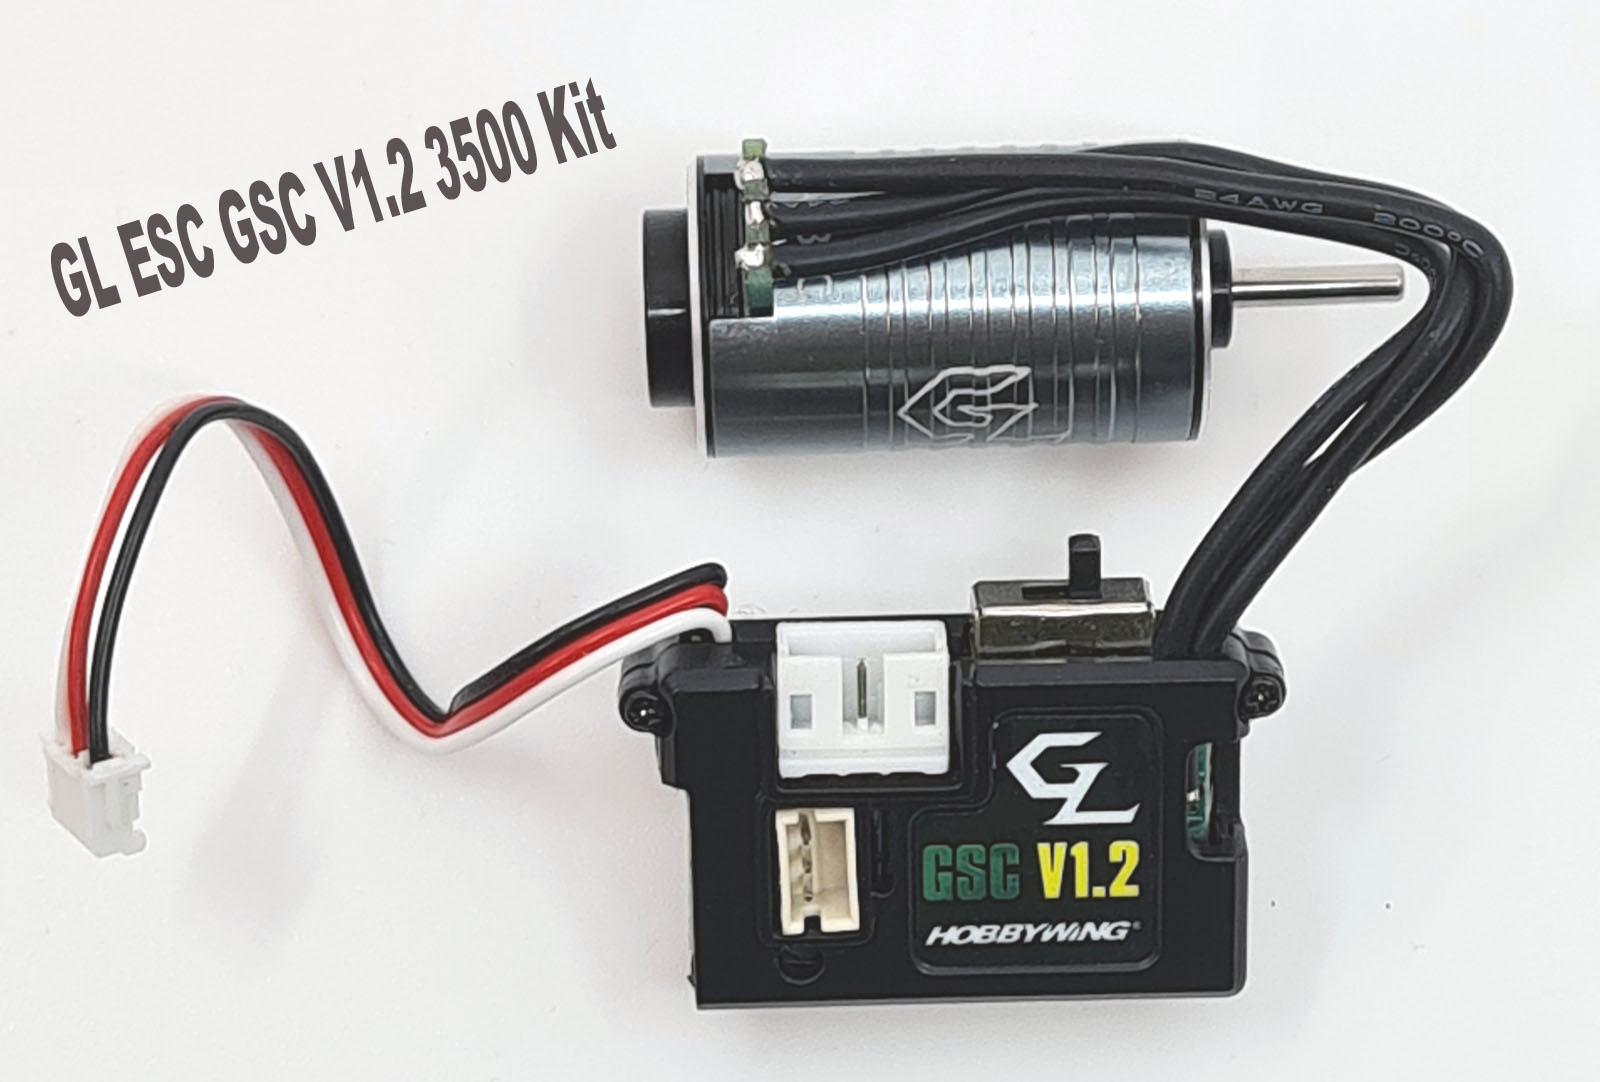 GL ESC GSC V1.2 3500 Kit